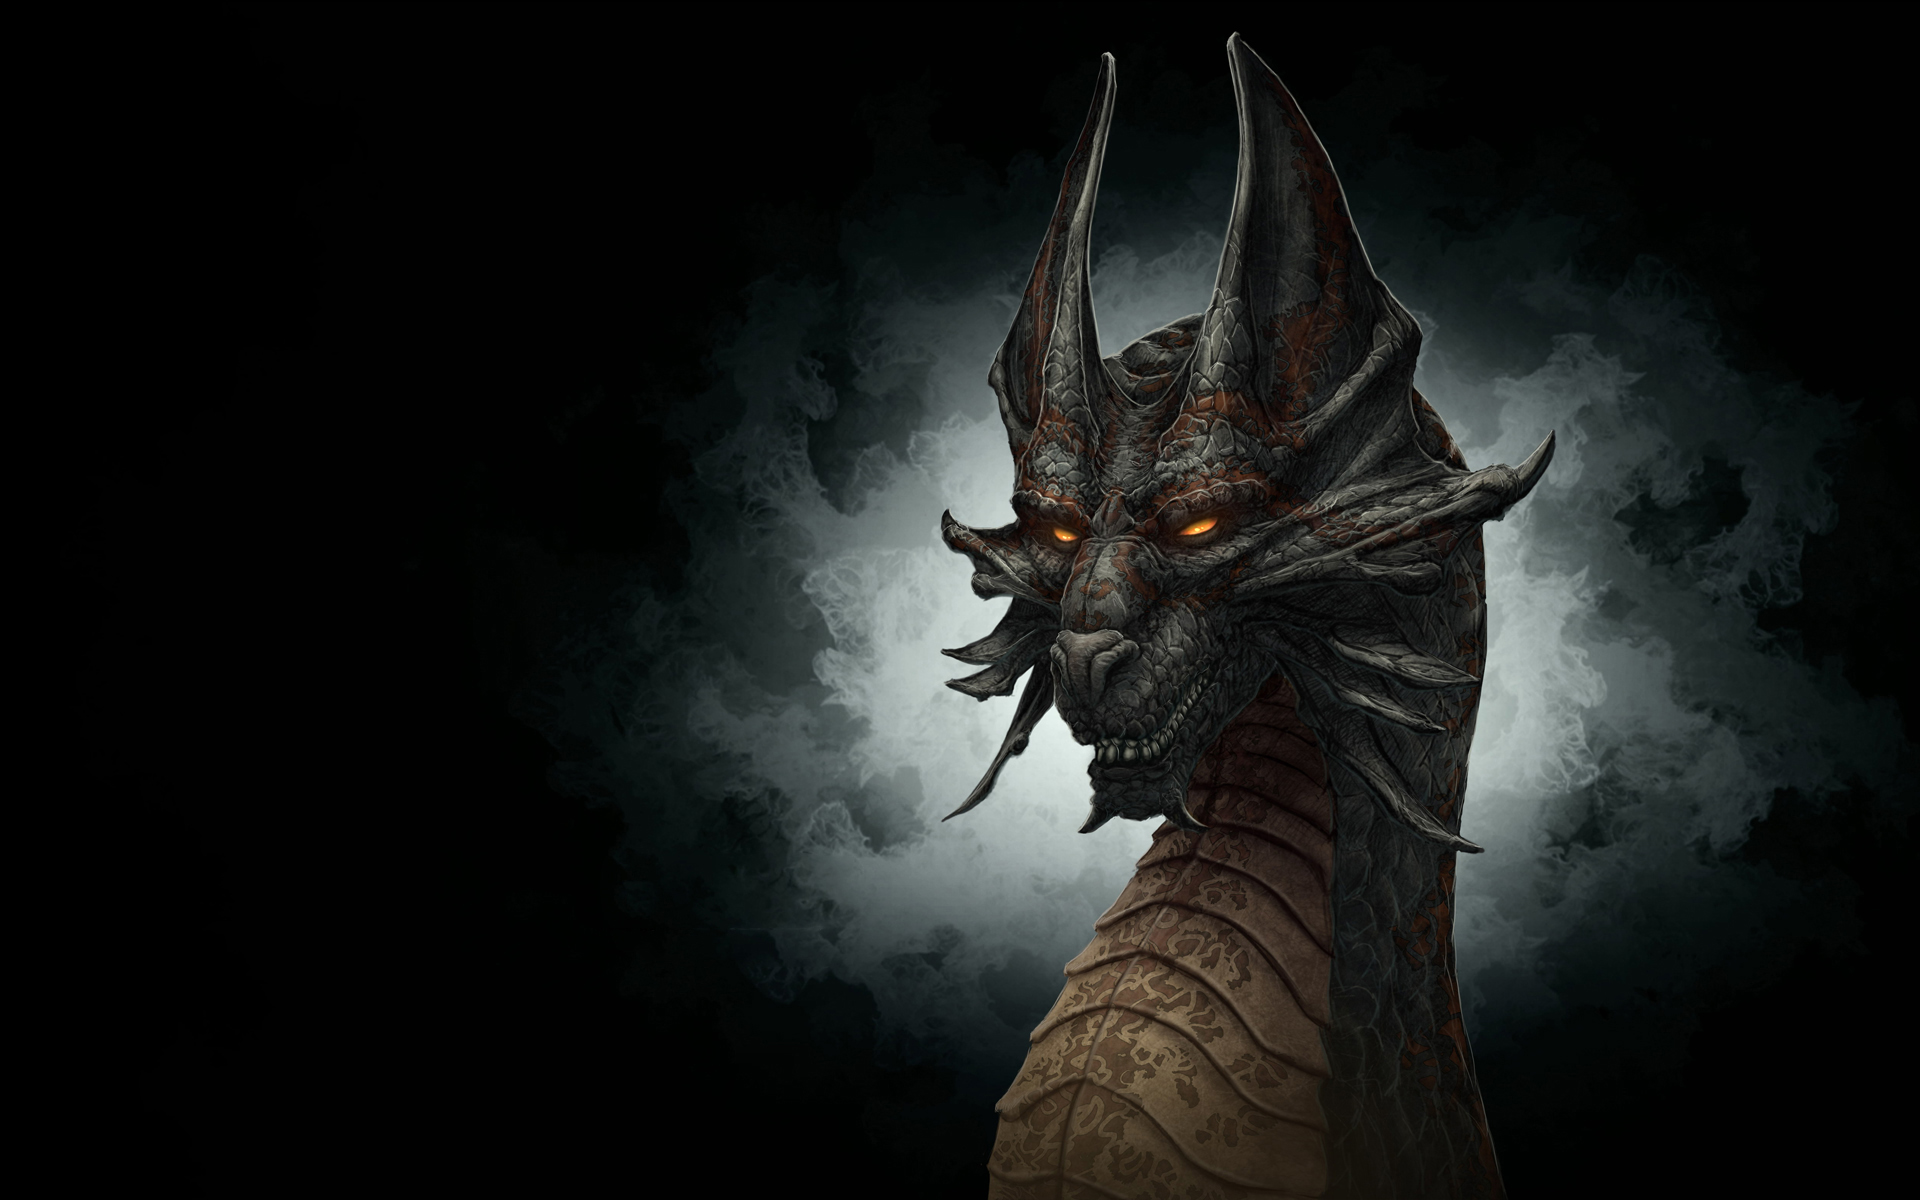 black dragon fondos de pantalla hd,continuar,cg artwork,oscuridad,demonio,personaje de ficción